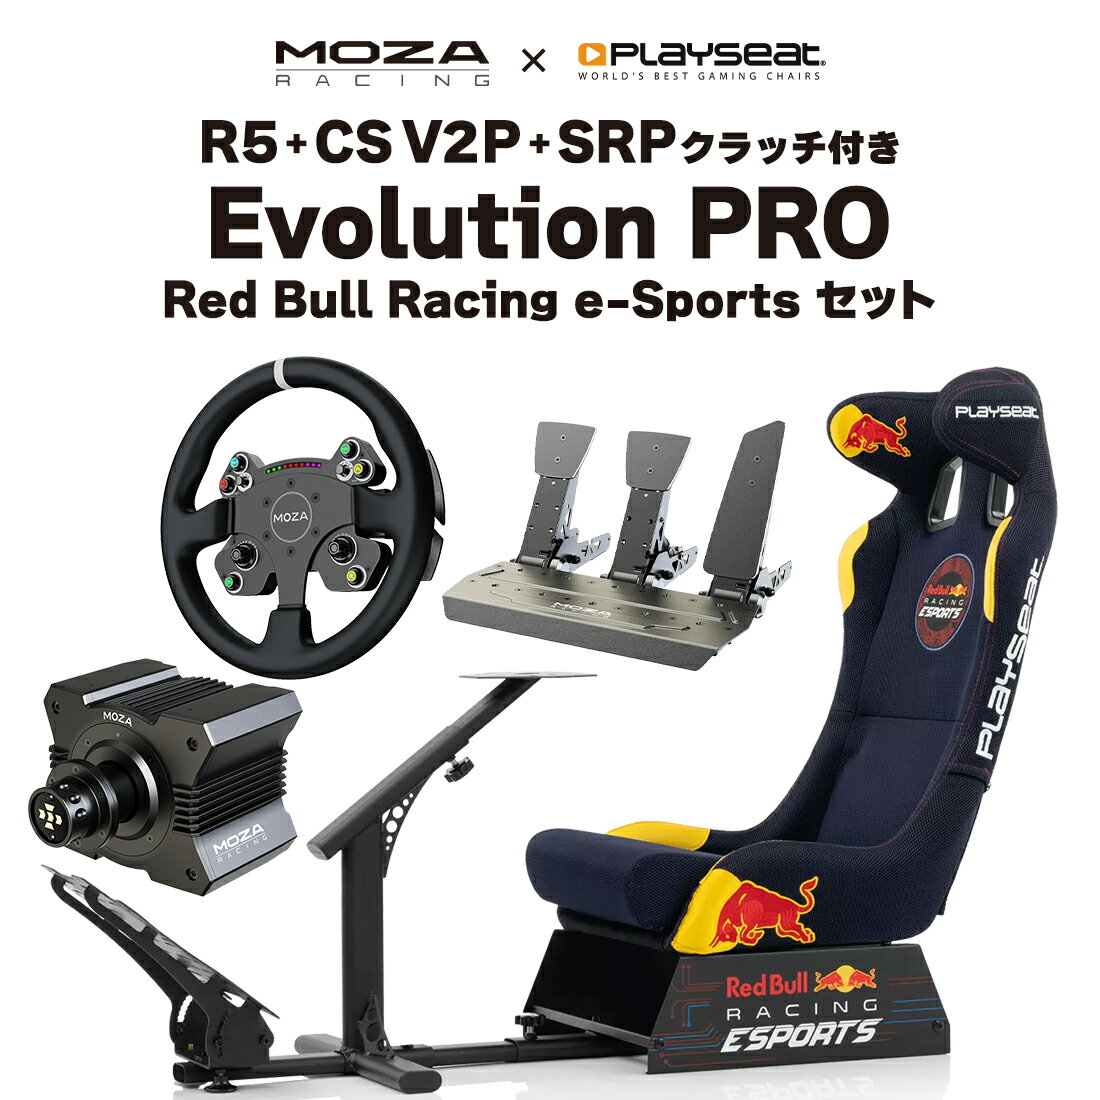 商品詳細 【商品説明】 ・届いたらすぐ遊べる、本格ダイレクトドライブ搭載のホイールベース+ハンドルコントローラー+ペダル+シミュレーターのセット Evolution PRO - Red Bull Racing Esports Playseat Evolution PRO - Red Bull Racing Esportsは、Red Bull Racing Esports チームの公式ライセンスを受けた シムレーシングシートです。 象徴的な Red Bull Racing のデザインと Playseat Evolution PRO の実証済みの品質の出会いから、このユニークなシム レーシング シートが誕生しました。 Playseat Evolution PRO - Red Bull Racing Esports でシートに座り、レースをしているときは、本物の形状と高品質の ActiFit 張り地のおかげで、本物の Red Bull レーシング カーに乗っているような感覚が味わえます。 ActifFit は通気性に優れたメッシュデザインで、長いレースセッション中でも究極の快適さをもたらします。 Playseat Evolution PRO - Red Bull Racing Esports は非常に快適で安定性も高く、高度な調整ができるため、自宅で最高に楽しいレーシング体験が保証されます。大人から子供まで使用できるので、友人や家族全員で楽しむことができます。独自の折りたたみ可能なデザインのため、使用しないときは省スペースで収納できます。 【レーシングカーシートの座り心地】 実際のレーシングカーのシートをモデルにしているので、通気性のあるメッシュデザインにより、本物のレッドブルレーシングカーに乗っているような気分で快適にレースを楽しむことができます。 【コンパクトな収納】 折り畳みが可能なので、使わないときはすっきりと収納することができます。また、移動の際の持ち運びも簡単です。 【便利な調節機能】 ご使用する方に合わせて調節可能なので、大人も子供も使用でき、お友達やご家族みんなで楽しめます。 【高いデザイン性】 Red Bull RacingEsportsチームの正式に認可された象徴的なレッドブルレーシングのデザインとPlayseat®EvolutionPROの実証済みの品質の組み合わせにより、見た目と使用感がハイスペックなシートです。 【商品詳細】 ブランド PLAYSEAT 商品管理番号 REP.00308 製品寸法(LxWxH) 130cm x 50cm x 98cm 製品重量 20.55kg 対応レース種類 フォーミュラ ラリー GT 等すべて対応 推奨体重 20～120kg 対応身長 120～220cm パッケージ寸法(LxWxH) 60.5cm x 50.5cm x 40cm パッケージ重力 22.50kg 同梱品 取扱説明書 組み立て用ツール 保証書 互換性(ハンドルコントローラー)※セット含む ［Logicool］G923、G29、PROレーシングホイール ［Thrustmaster］T300 RS、T128P、T248、T-GT 2、T80 Ferrari 488 Edition、TS XW、T818、T300 Ferrari Integra　等 互換性(ホイルベース) ［MOZA］R5、 R9、R12、 R16、 R21 ［Fanatec］Club Sport DD、DD Pro、CSL DD、DD Extreme、DD2、DD1 QR2　等 互換性(ペダル) ［MOZA］SR-P Pedal、 CRP Pedal(throttle+braker+clutch) ［Heusinkveld］Sprint 3-pedal ［Heusinkveld］Ultimate+ 3pedal ［Logicool］PRO RACING PEDALS ［Thrustmaster］T3PM、T-LCM　等 互換性(シフター) ［MOZA］HGP Shifter、 HBP Handbrake ［Thrustmaster］TH8S、TH8A、TSS ［Logicool］DRIVING FORCE SHIFTER ［Fanatec］SQ V 1.5、Handbrake V1.5　等 MOZA R5ダイレクトドライブホイール ・MOZAダイレクトドライブの軽量モデル ・洗練された外観と耐久性を実現する、アルミニウム合金 ・オンボード温度モニタリング ・15ビットの超高解像度モーターエンコーダー ・工業用導電性スリップリング ・設定が便利なMOZAピットハウス ・すべての MOZA V2 ホイールと互換性があります CS V2Pステアリング ・航空グレードのアルミ合金フレーム ・カスタマイズされたクイックリリース ・カーボンファイバーパドル付き光電シフター ・RGB シーケンシャル シフター ライト インジケーター ・プログラム可能なメカニカル キー ボタン SR-Pペダル ・高張力鋼使用による高い剛性と耐久性 ・最大75kgの圧力センサー ・16ビット（65536ppr）の角度センサー解像度 ・圧力と角度センサーによるペダル制御 ・USBポート経由でPCと直接接続が可能 ・MOZA の専用ソフト Pit House でペダル出力カーブを簡単に設定することが可能 SR-Pペダル(クラッチ) ・SR-P 専用クラッチペダル ※モニター発色の具合により、実物とは色合いが異なる場合がございます。 検索用キーワード ハンコン ペダル コックピット スタンド ダイレクトドライブ クイックリリース シフター 三画面 フォースフィードバック FFB PC PS4 PS5 switch コンソール ゲーミング AssettoCorsa グランツーリスモ F12021 DIRT Project CARS GRID Legends Need for Speed ザ クルー Gravel DRIVECLUB Automobilista HORI ホリ Logicool Logitech ロジクール Thrustmaster スラストマスター MOZA モザ Fanatec ファナテック Heusinkveld Cube Controls Simucube Eスポーツ e-sports ストリーマー ドライビングシミュレーター ストラッセ ゲーミングチェア ハンコンスタンド ハンドルコントローラー コックピットベース コクピットベース レースゲーム レーシングコントローラー ステアリング ステアリングホイール レーシングホイール対応 グランツーリスモSPORT グランツーリスモ6 PS3 playstation3 playstation4 プレステ3 プレステ4 レーサー ゲーム ゲーム部屋 モニターフレーム アセットコルサ F12018 F12017 シミュレーター2